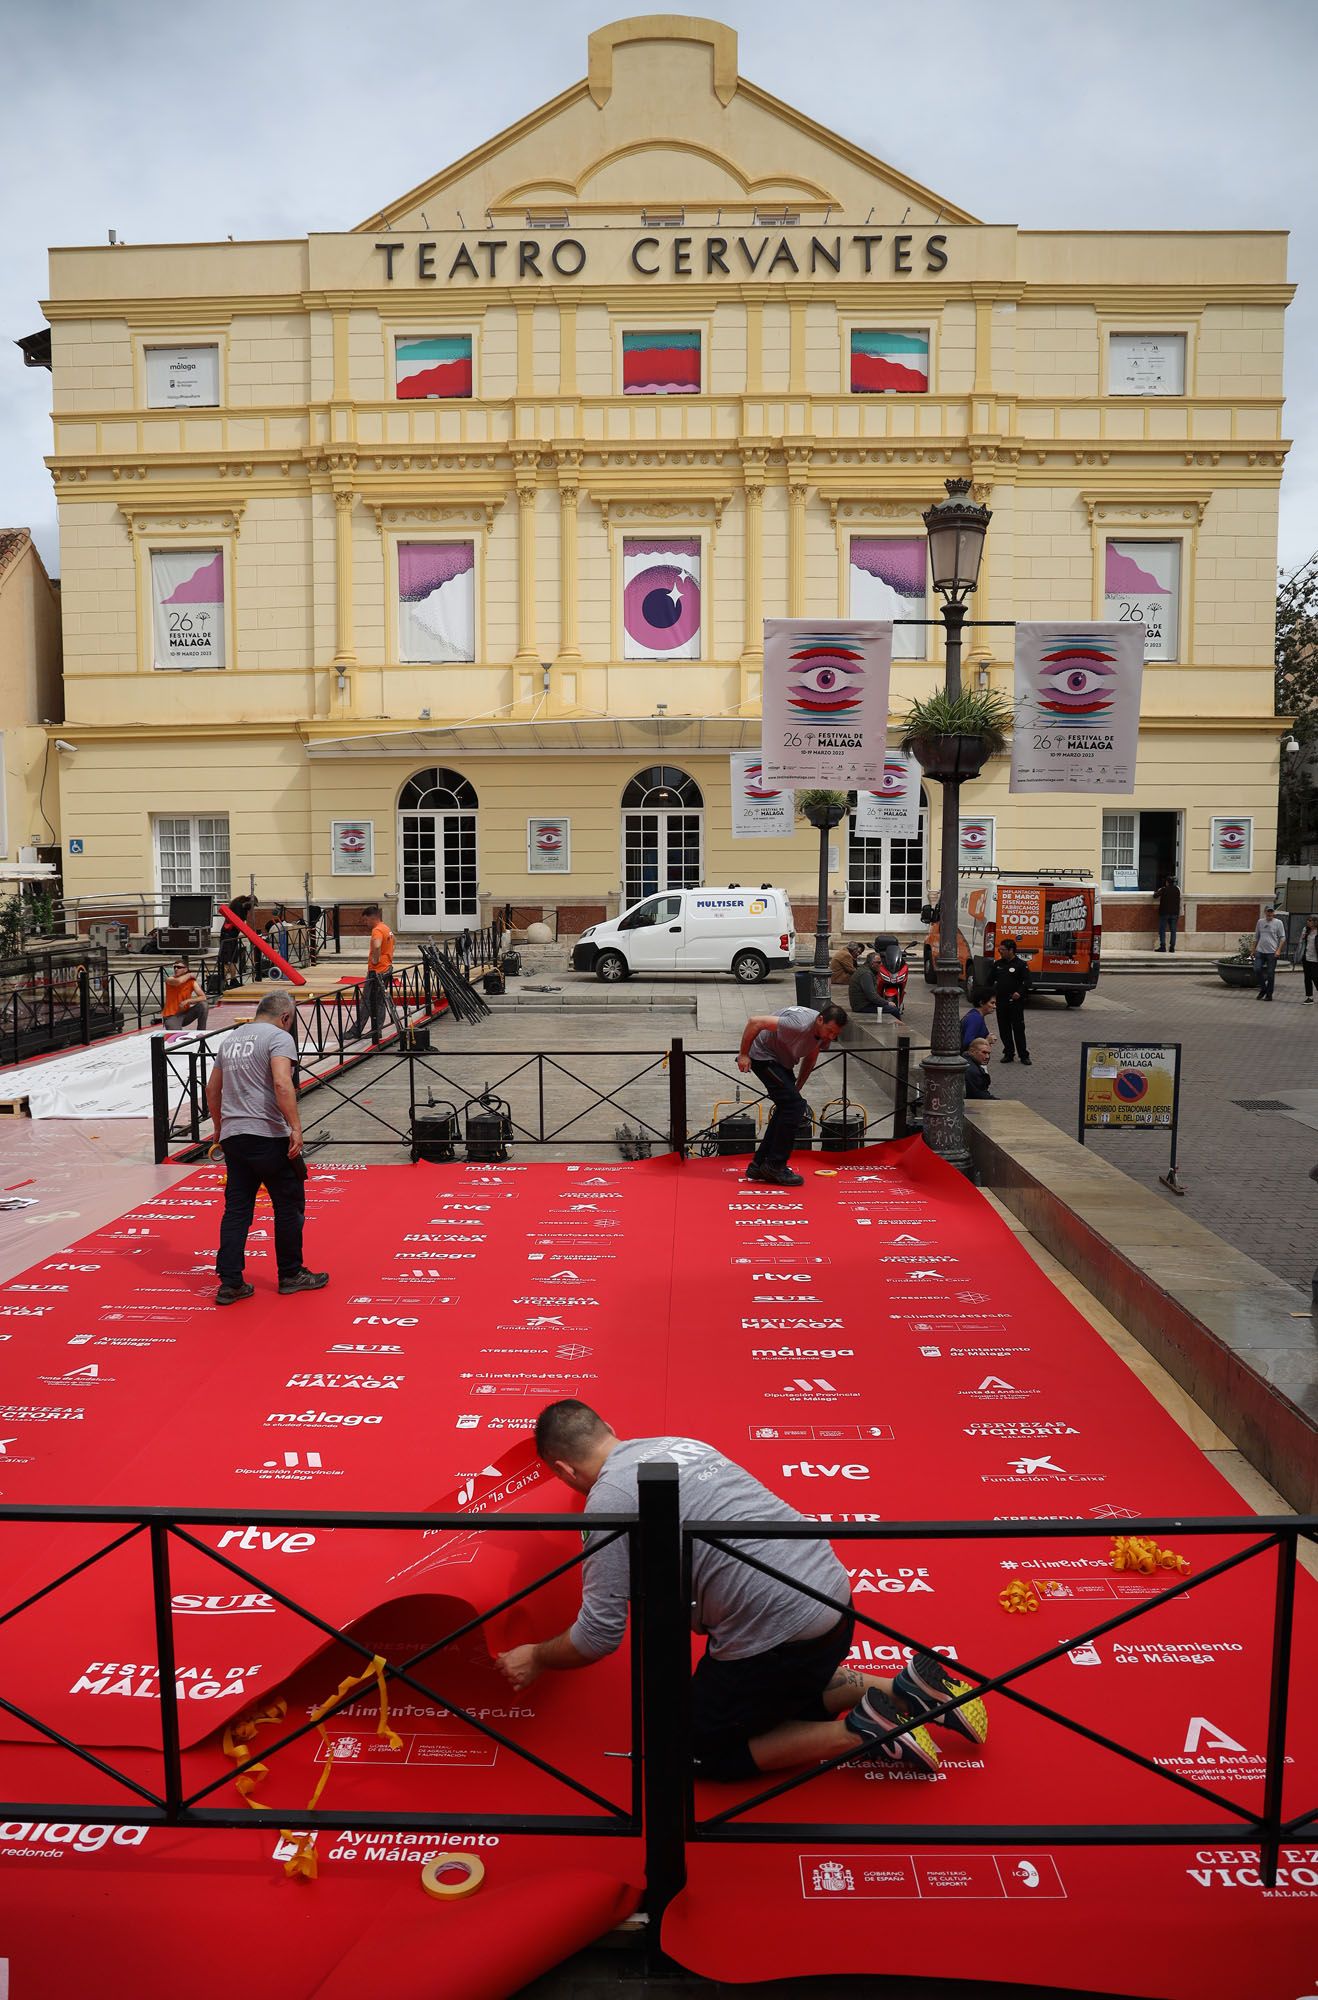 Preparativos del Festival de Cine de Málaga de 2023